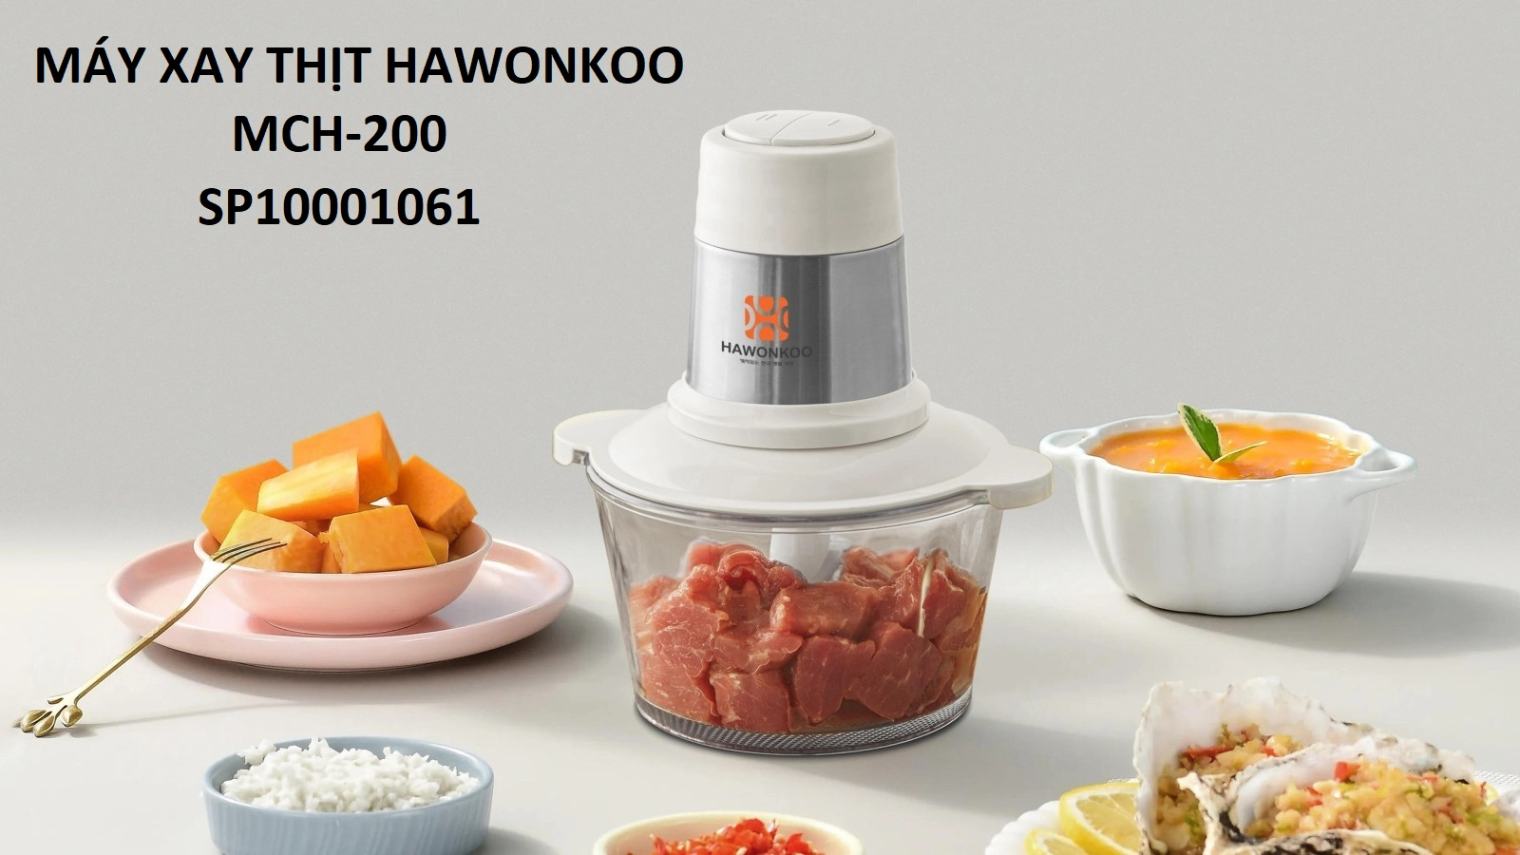 Máy xay thịt Hawonkoo MCH-200